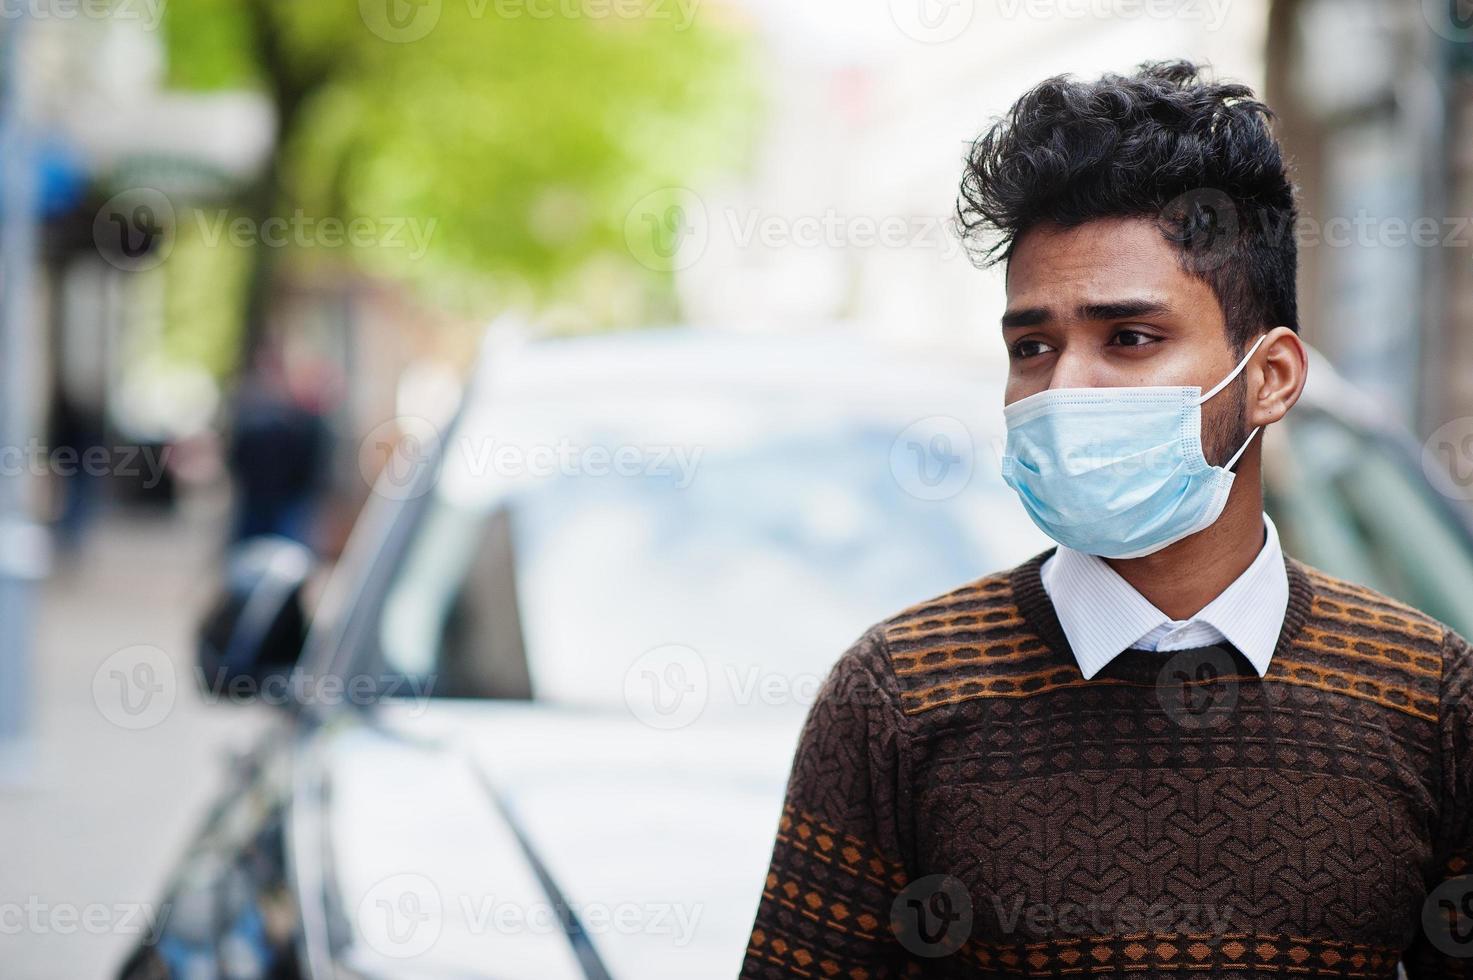 conceito de coronavírus covid-19. homem indiano do sul da Ásia usando máscara para proteger do vírus corona. foto